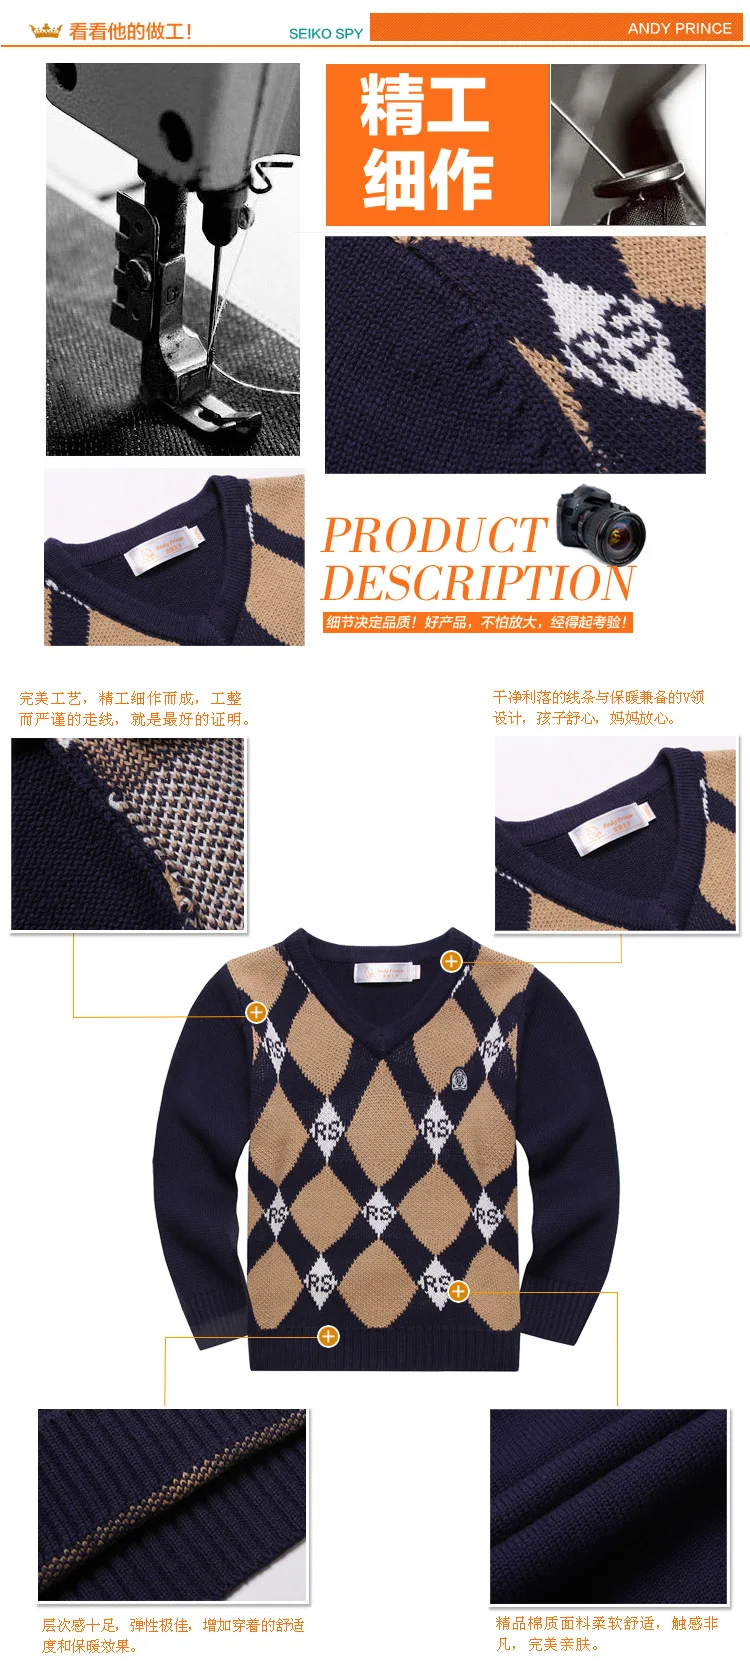 Лидер продаж, осенне-зимний свитер с треугольным вырезом из хлопка для мальчиков детская одежда вязаная Базовая рубашка детские пуловеры для мальчиков, одежда